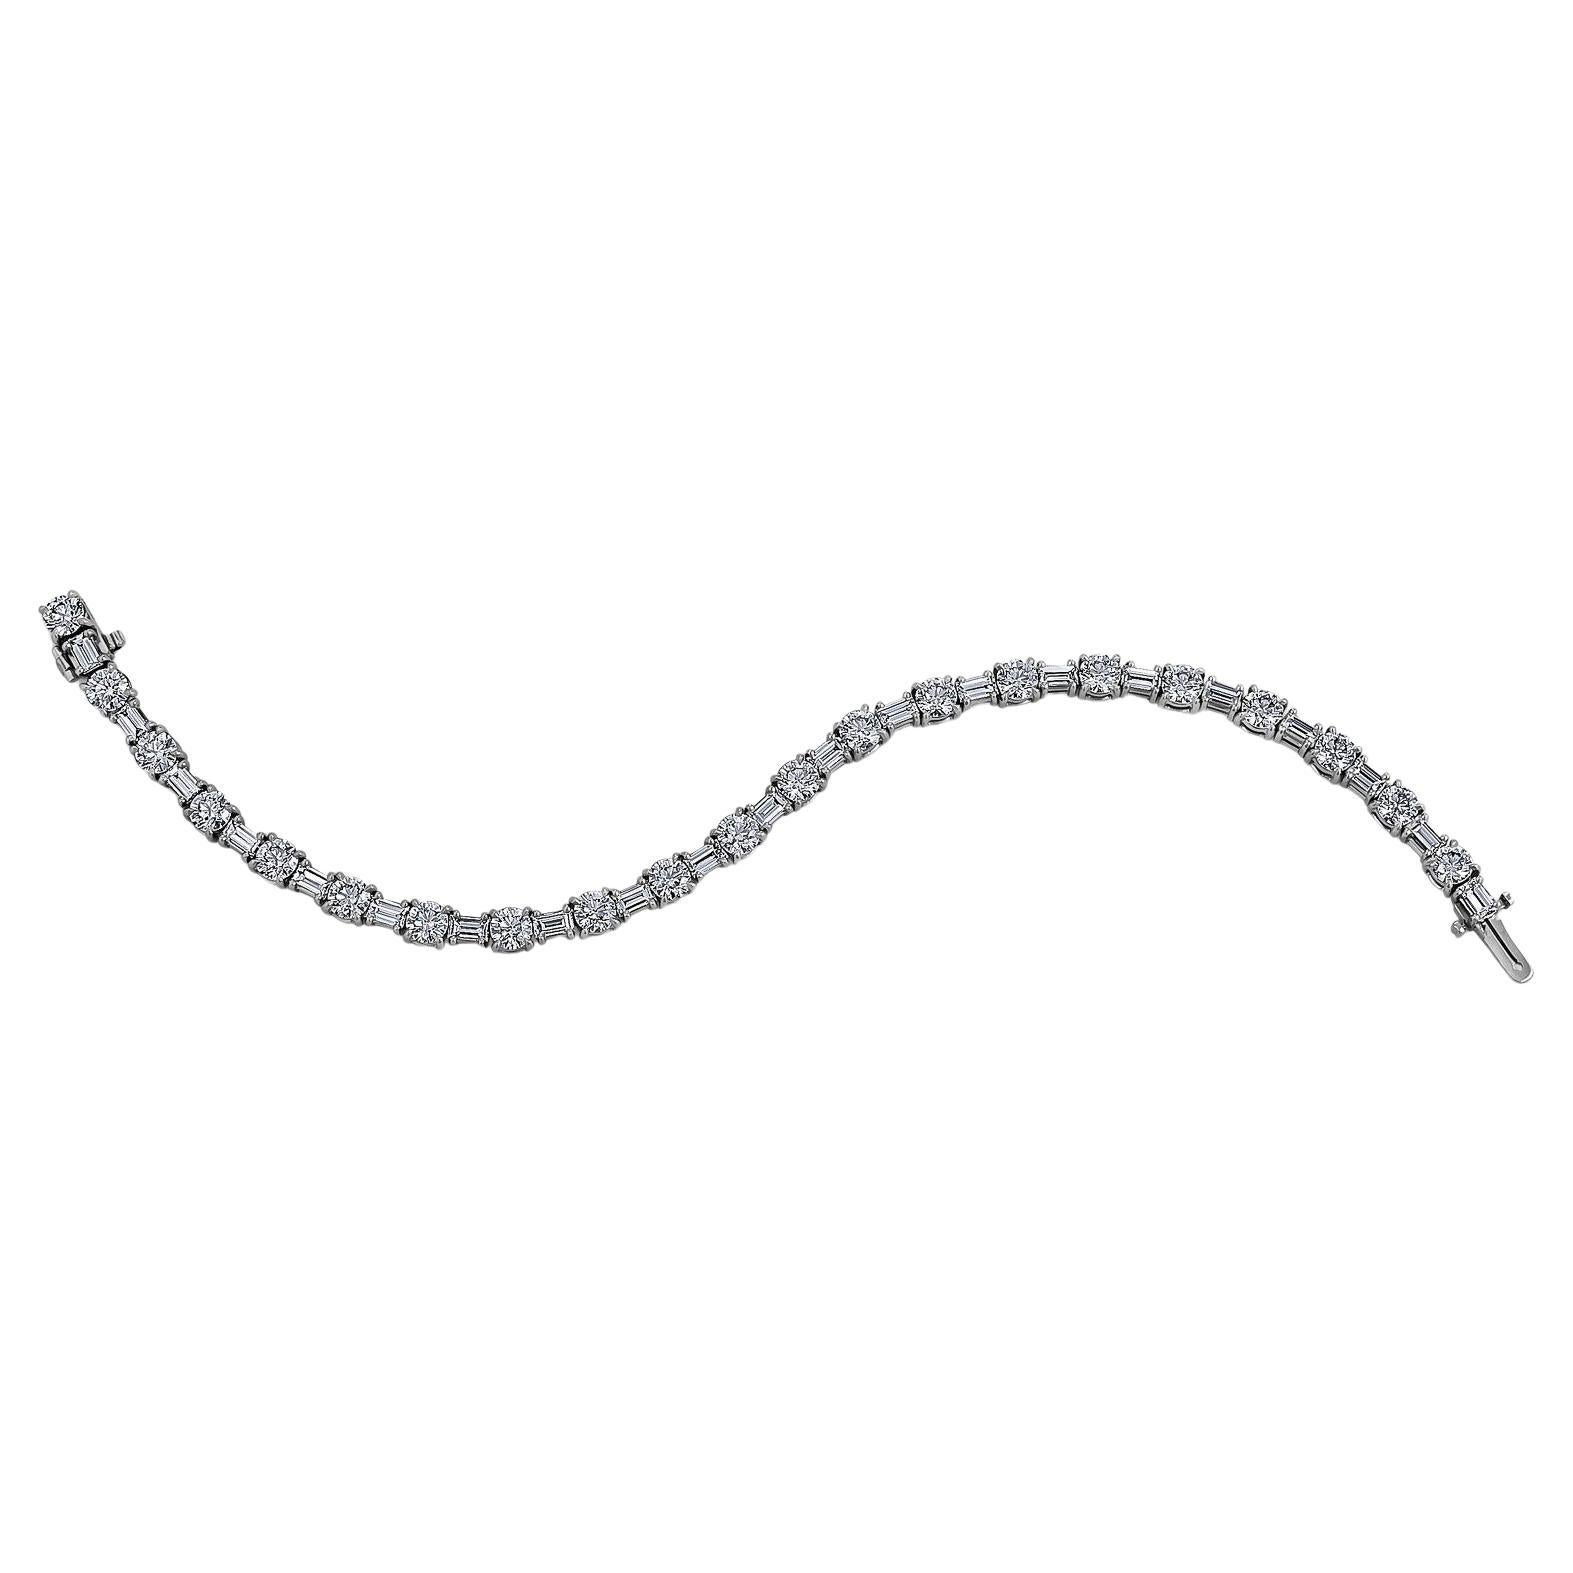 Steven Fox Jewelry Bracelet tennis